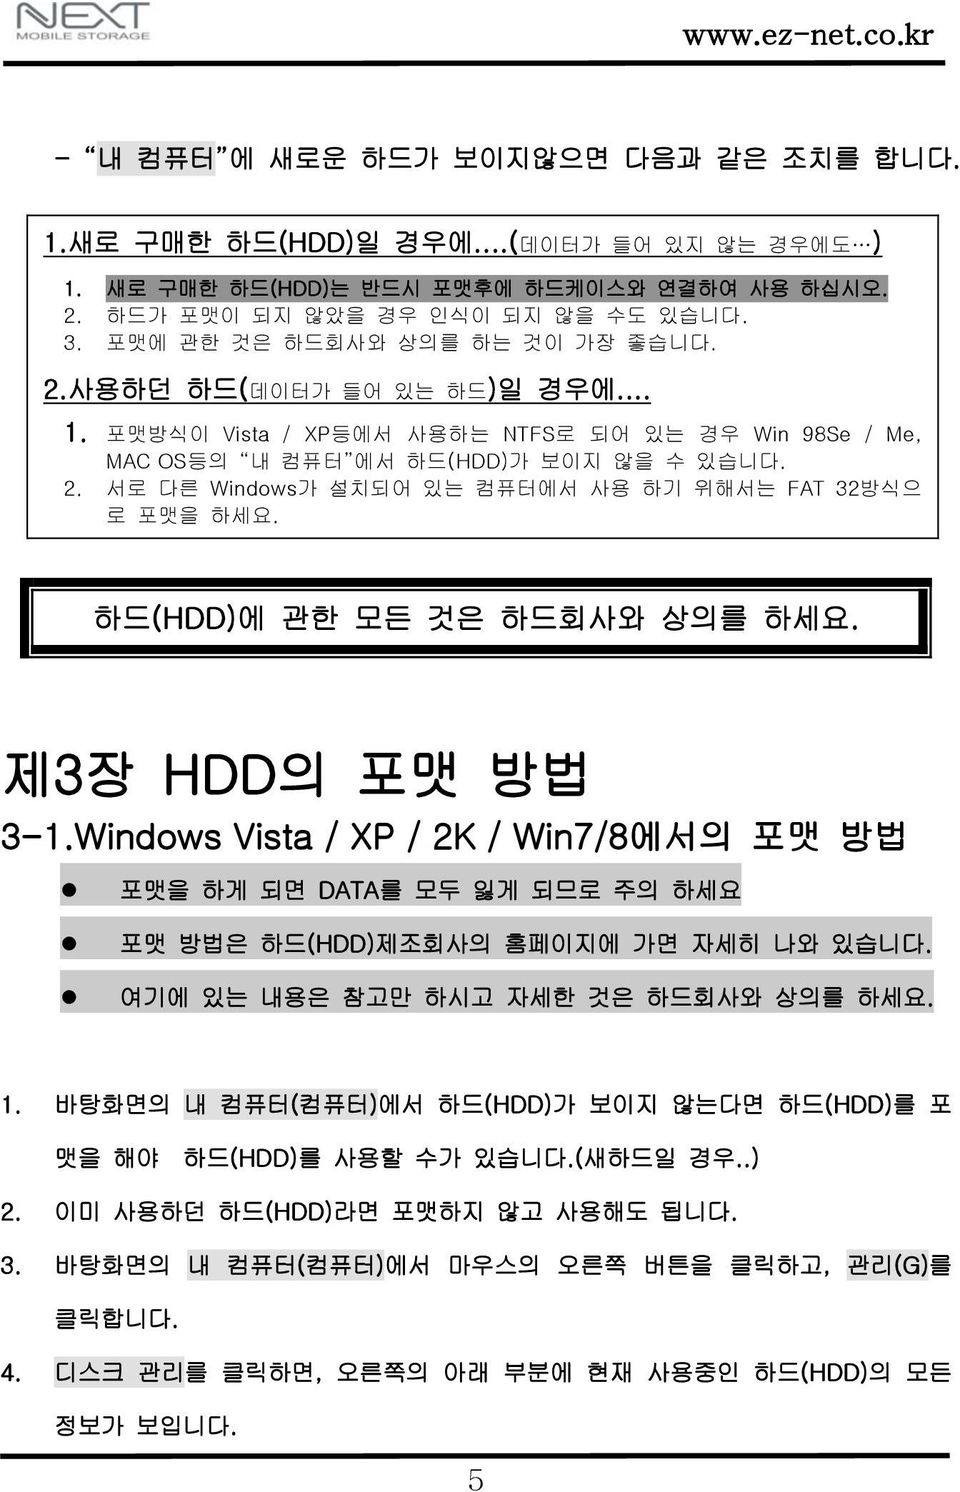 하드(HDD)에 관한 모든 것은 하드회사와 상의를 하세요. 제3장 HDD의 포맷 방법 3-1.Windows Vista / XP / 2K / Win7/8에서의 포맷 방법 포맷을 하게 되면 DATA를 모두 잃게 되므로 주의 하세요 포맷 방법은 하드(HDD)제조회사의 홈페이지에 가면 자세히 나와 있습니다.